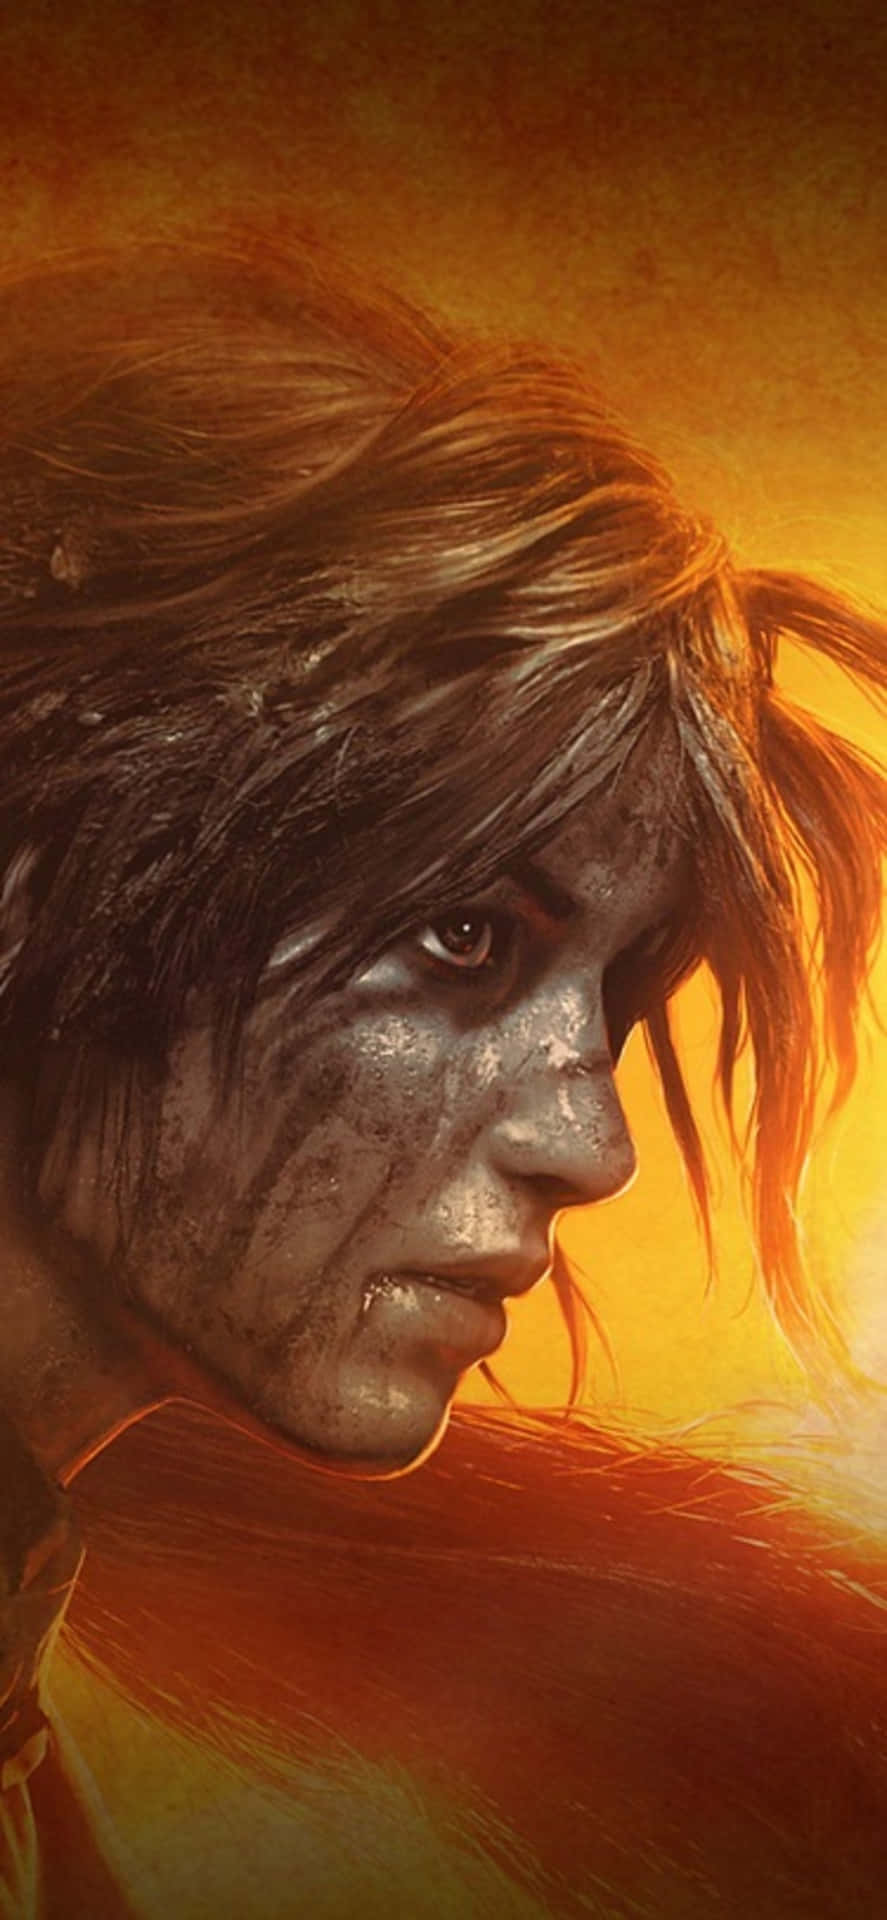 Upptäckhemligheterna Bakom Shadow Of The Tomb Raider Med Iphone X.